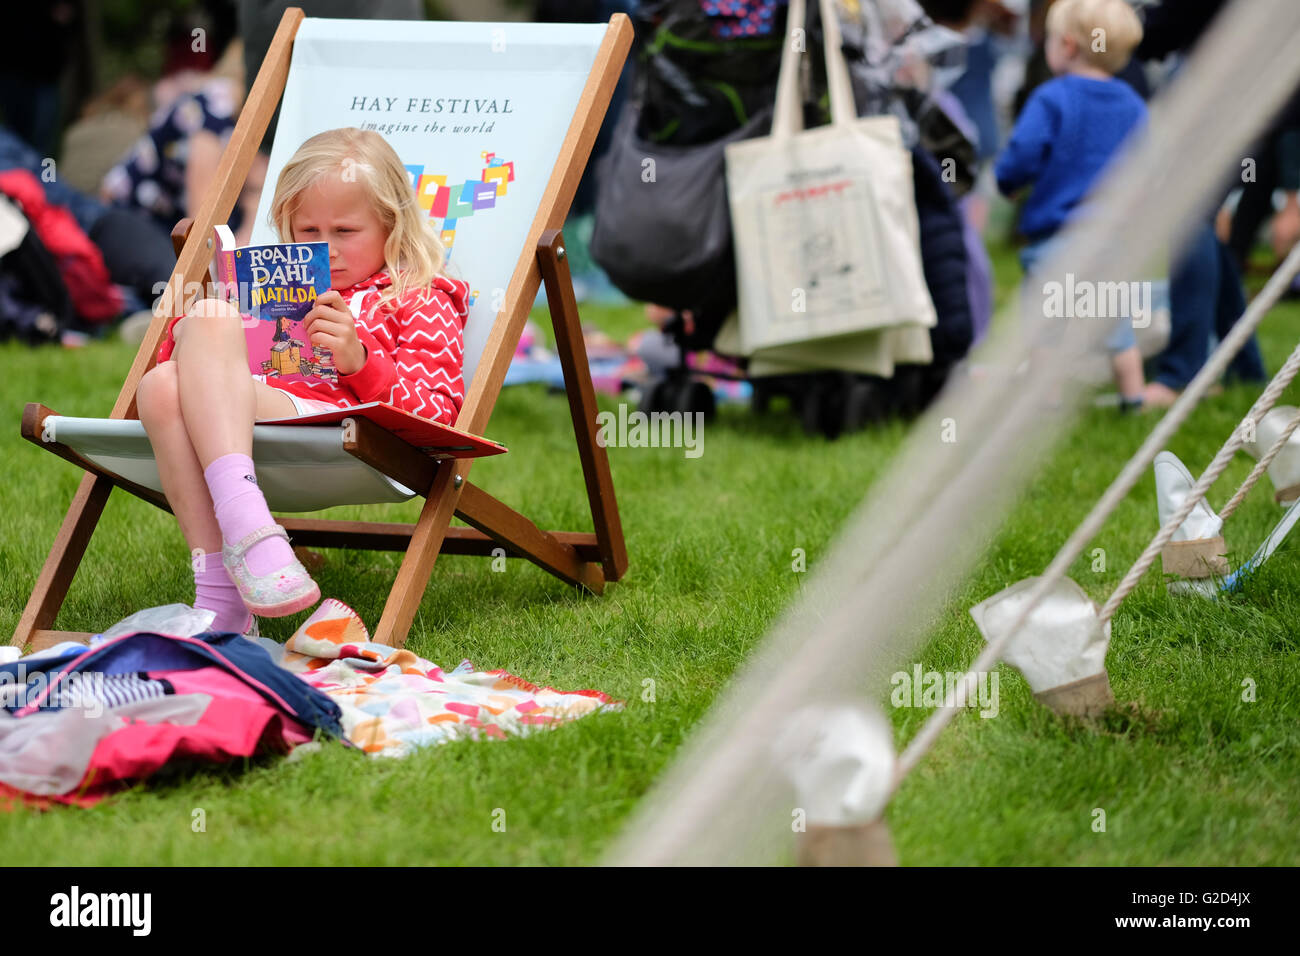 Hay Festival 2016 - Mai 2016 - Ein junges Mädchen sitzt und liest Matilda von Roald Dahl auf dem Festival rasen. In diesem Jahr wird der 100. Jahrestag der berühmten Autor, seine Bücher bleiben beliebt wie eh und je. Foto Steven Mai/Alamy leben Nachrichten Stockfoto